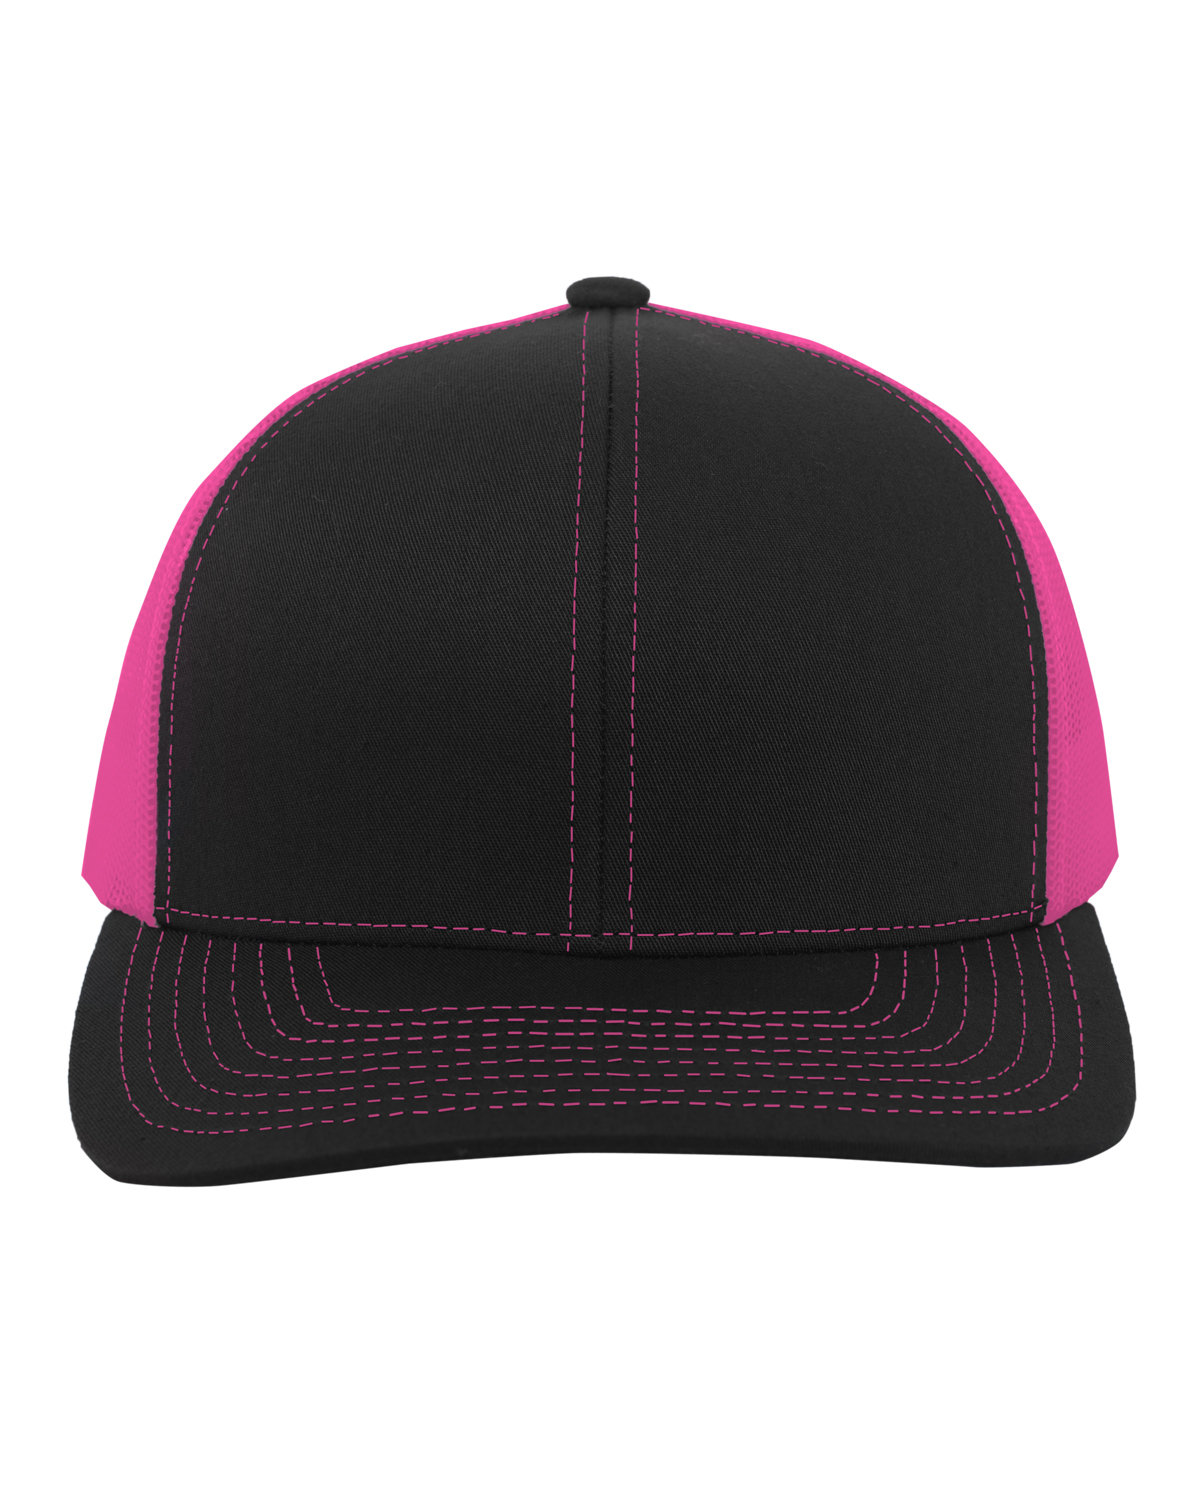 Pacific Headwear Trucker Snapback Hat BLACK/ PINK 